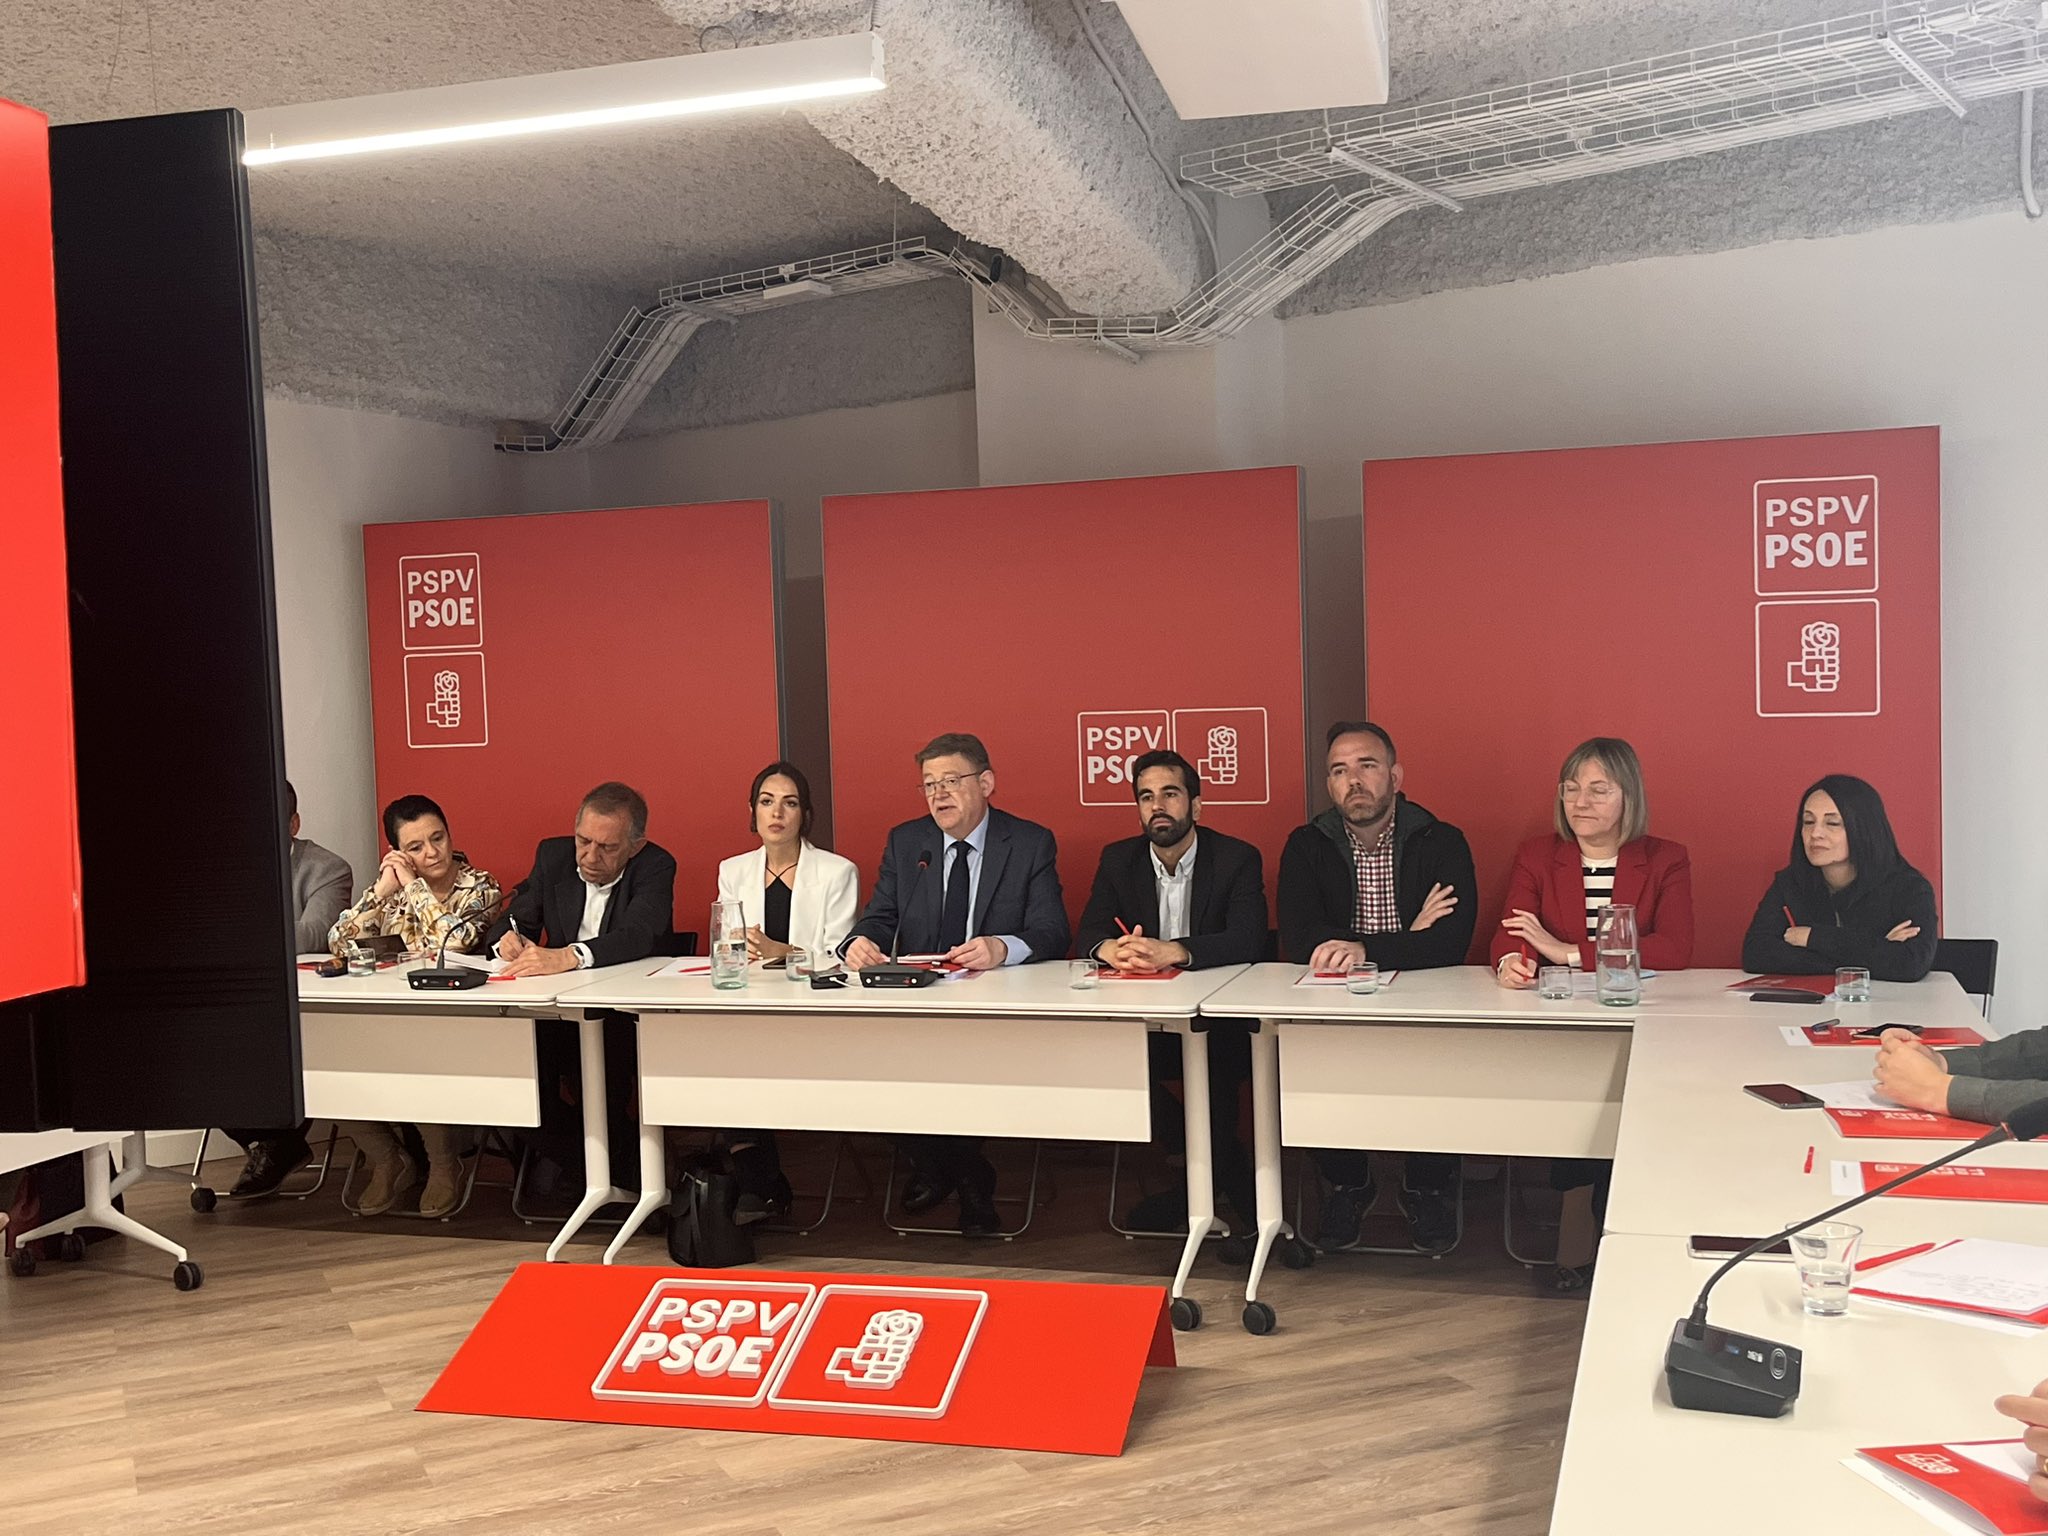 En este momento estás viendo Ximo Puig: “Vamos a seguir trabajando por la mayoría social de los valencianos sin ninguna limitación y desde el diálogo y el debate”